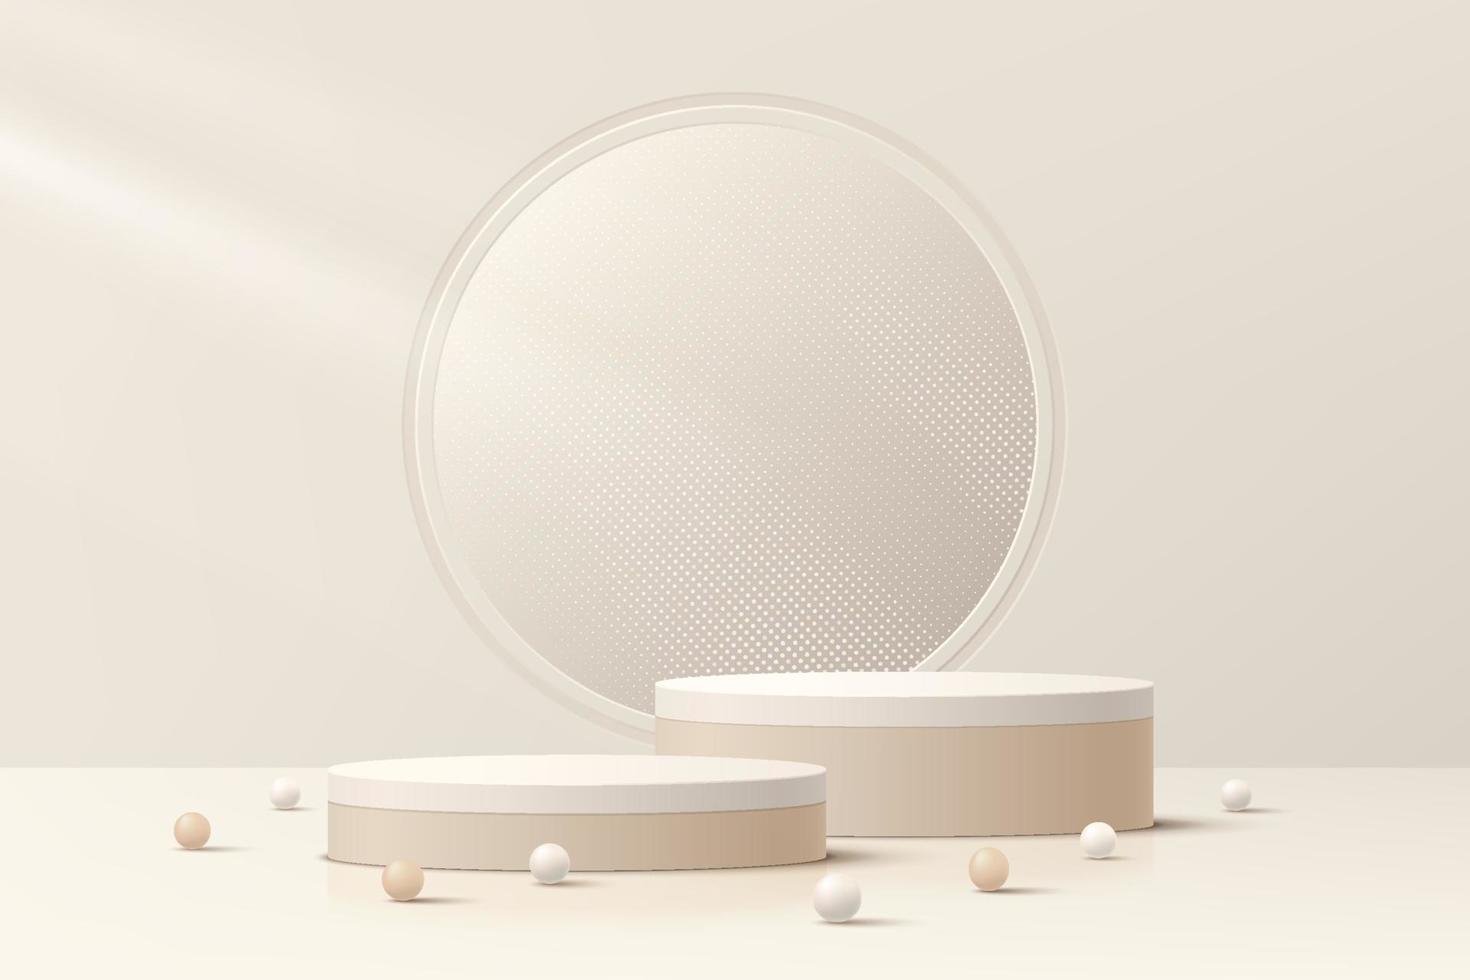 ensemble de podium de piédestal de cylindre marron clair 3d réaliste abstrait et paillettes brillantes dans la fenêtre du cercle. scène minimale pour la présentation de l'affichage du produit. conception de plate-forme géométrique vectorielle. vitrine de scène. vecteur